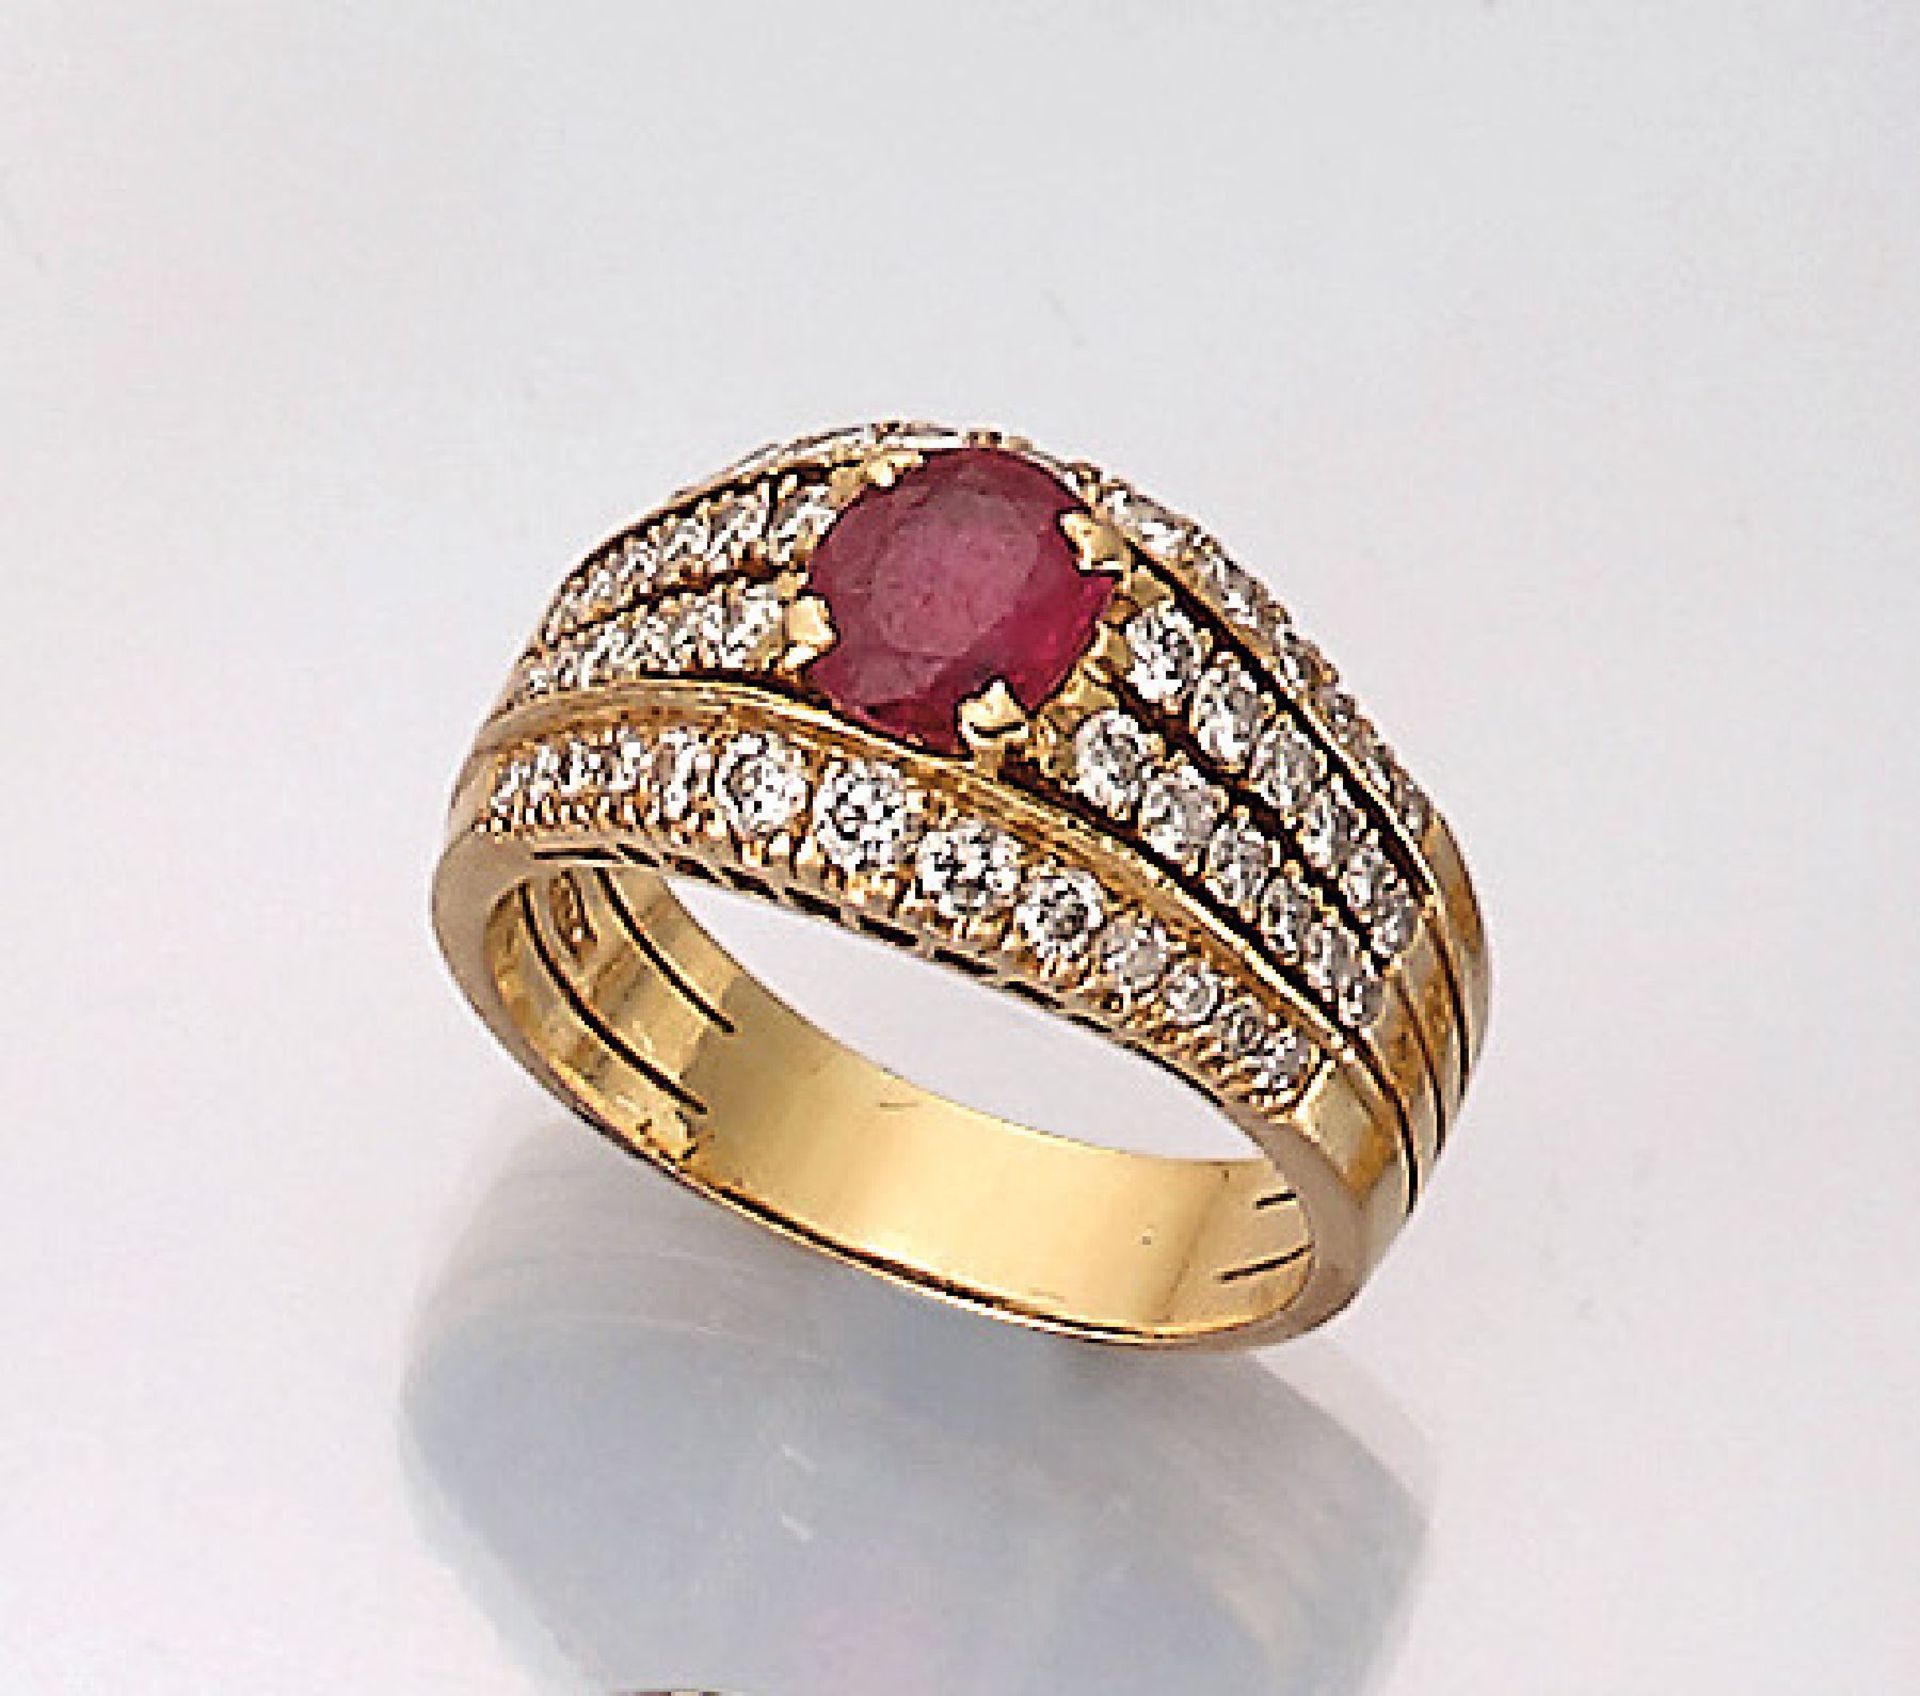 18 kt Gold Ring mit Rubin und Brillanten, GG 750/000, mittig mit einem ovalfacett. Rubinca. 1.50 ct,